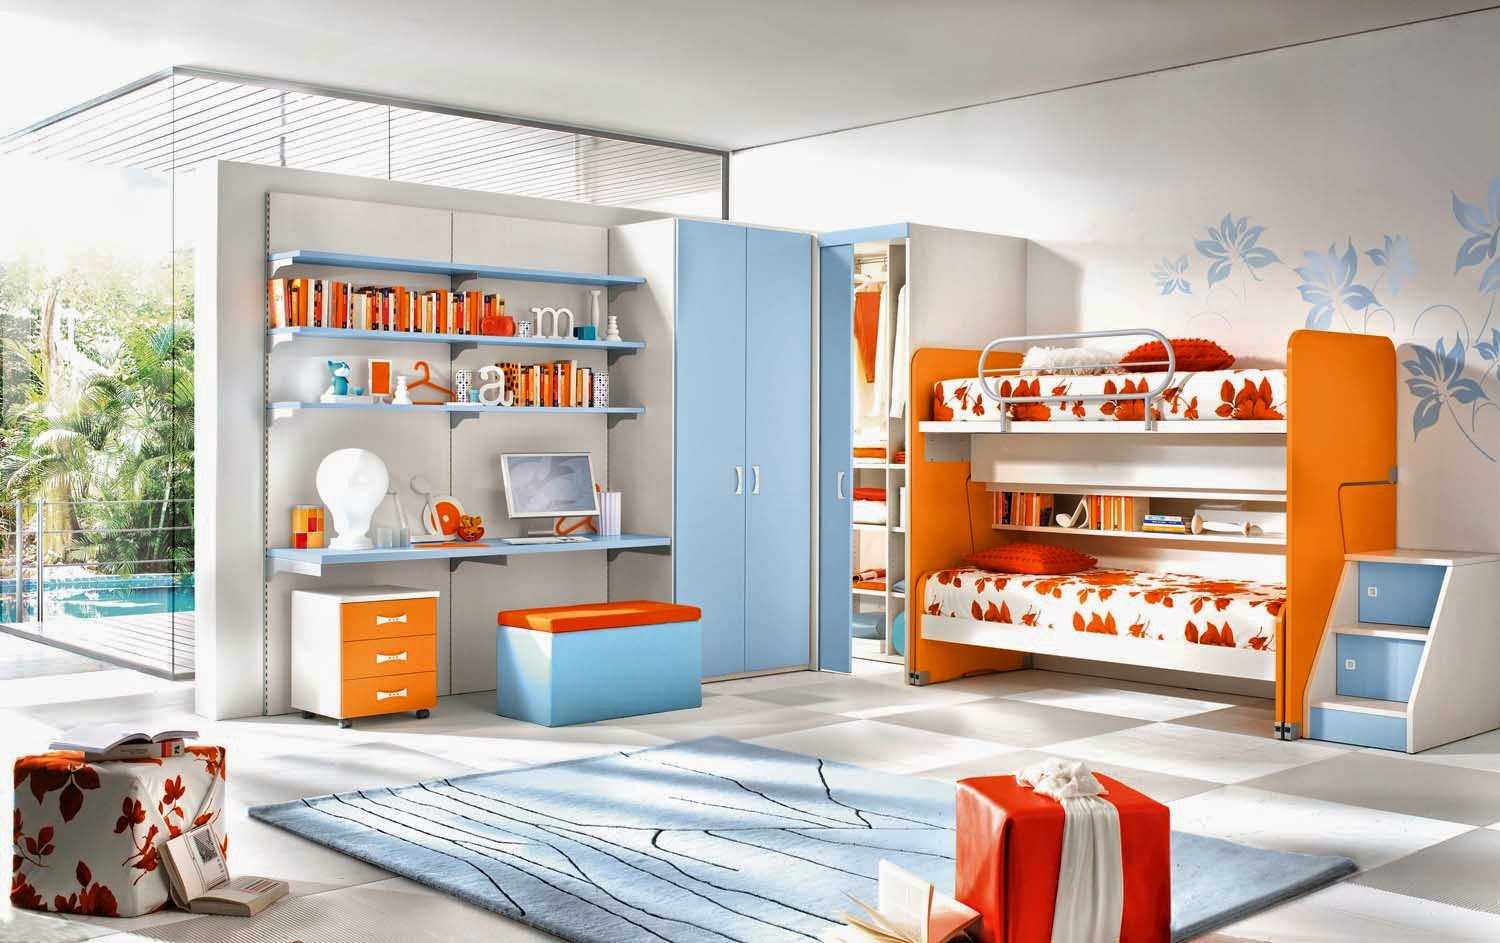 o combinație de portocaliu închis în stilul camerei cu alte culori